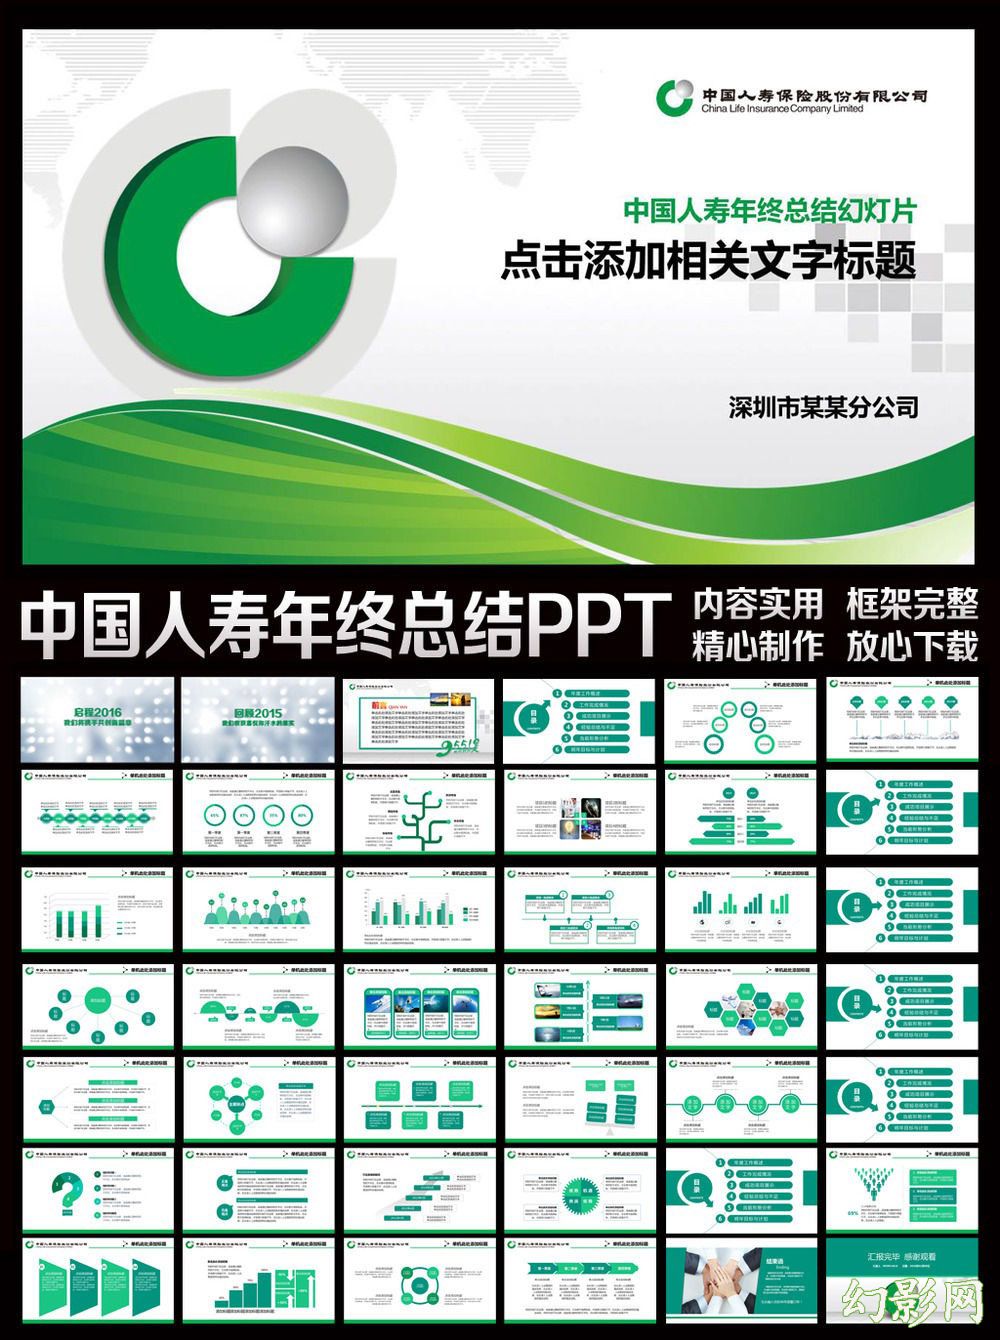 中国人寿保险公司年终总结工作会议汇报新年计划动态PPT模